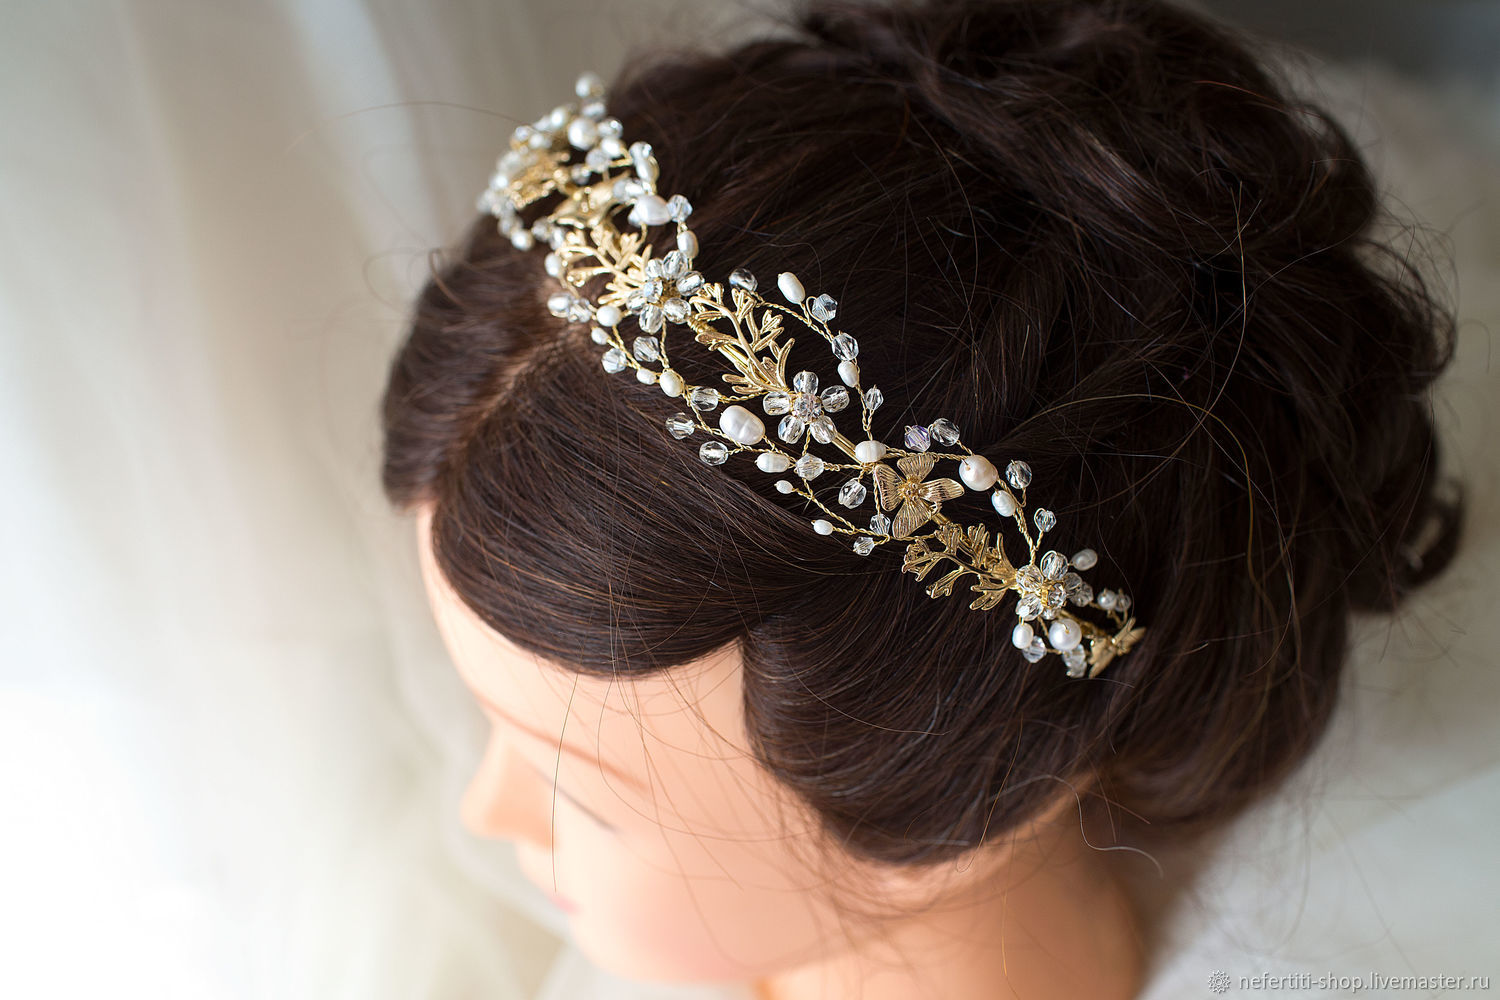 Как сделать украшения для волос своими руками: цветы из ленточек и бисера, аксессуары для свадьбы